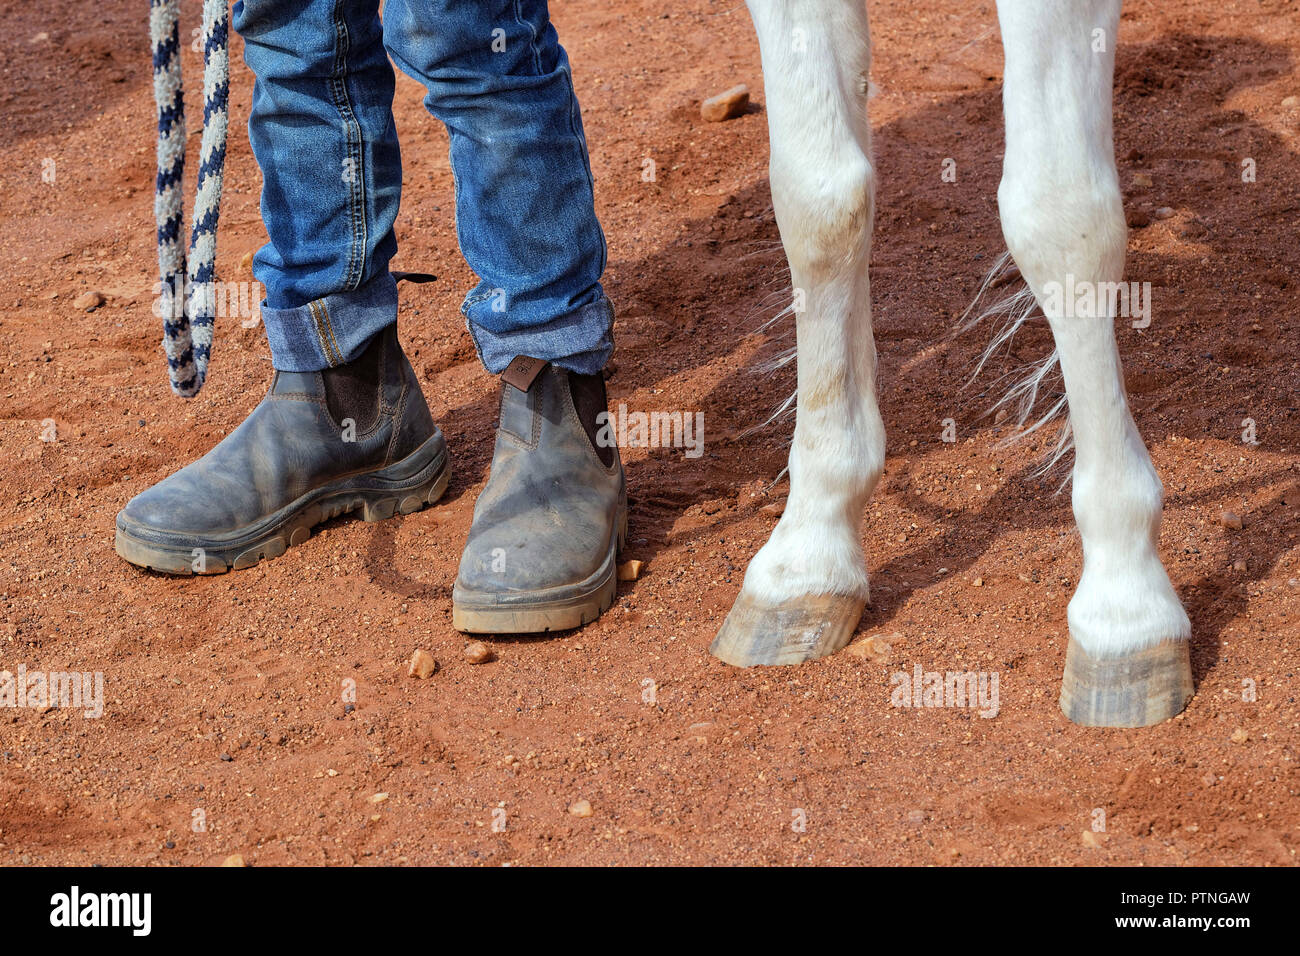 La 97th in funzione della boccola annuali gare di cavalli a Landor,,1000km a nord di Perth, Australia. Ott 2018. Foto Stock